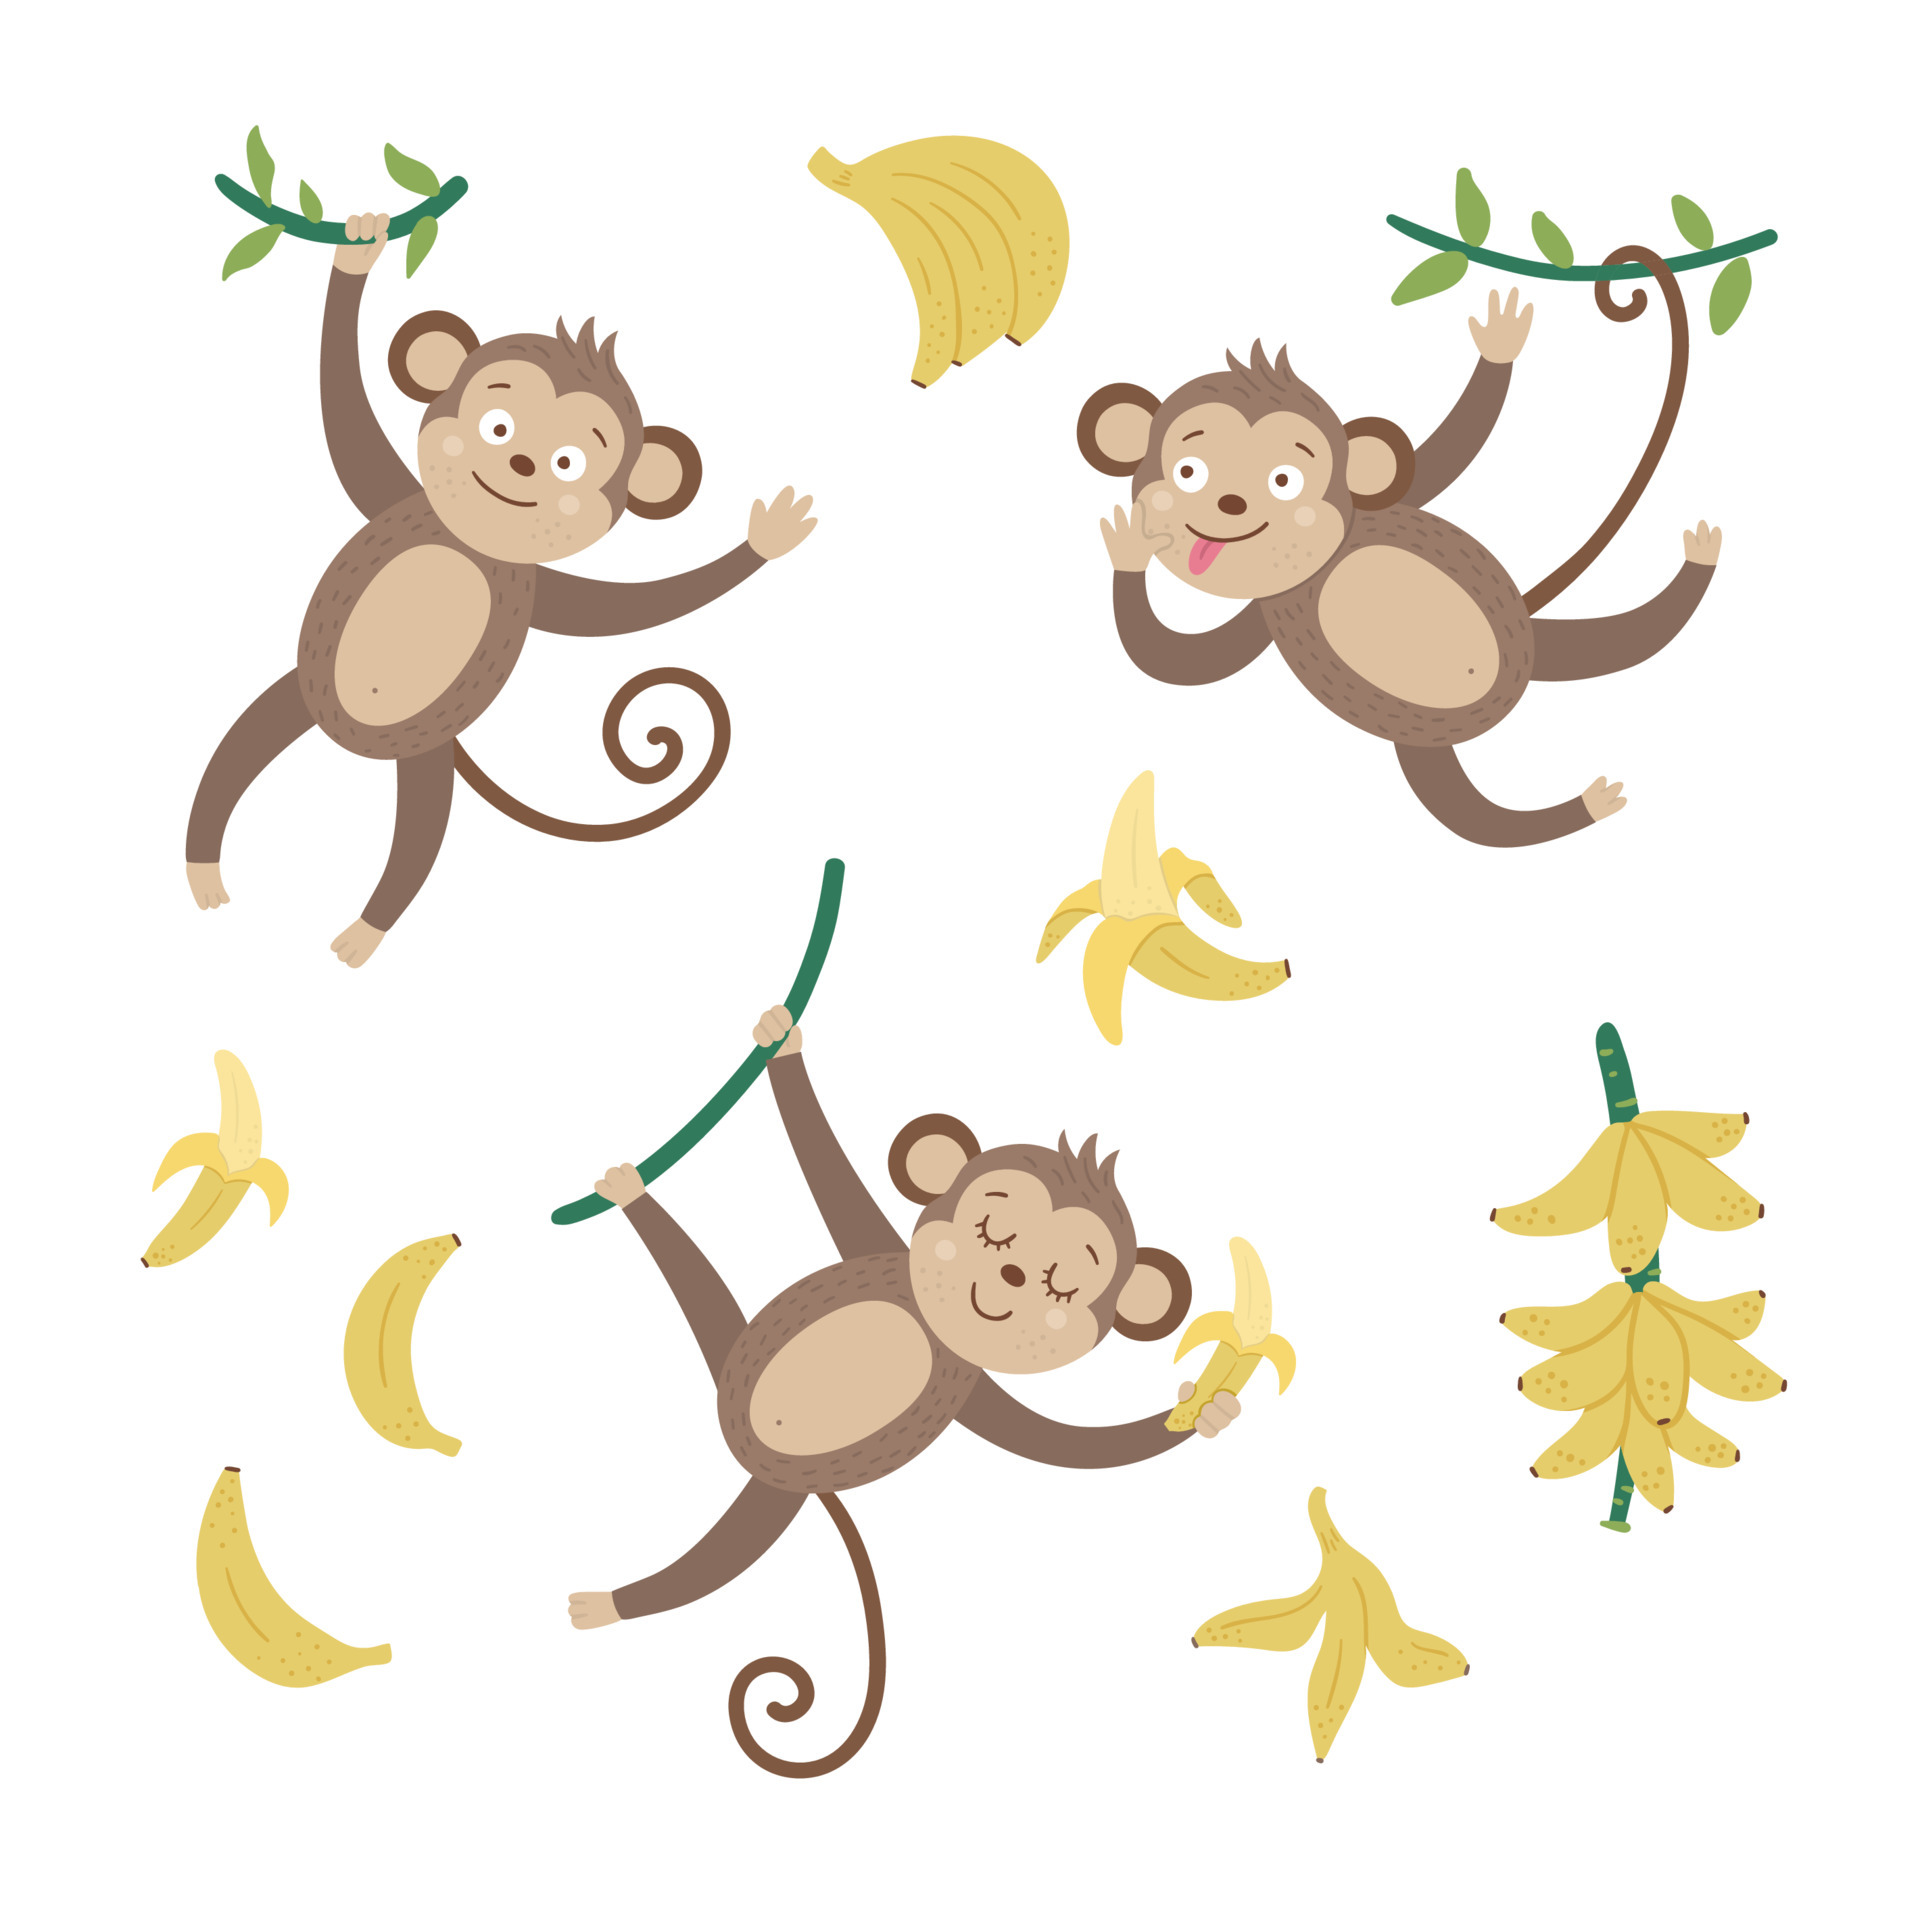 Hãy xem bức ảnh về đồ hoạ khỉ xinh xắn với chuối trên nền trắng, các bạn sẽ không thể nhịn được cười khi nhìn thấy chú khỉ này đang tình cảm ôm lấy quả chuối, tạo nên khung cảnh đáng yêu và hài hước.